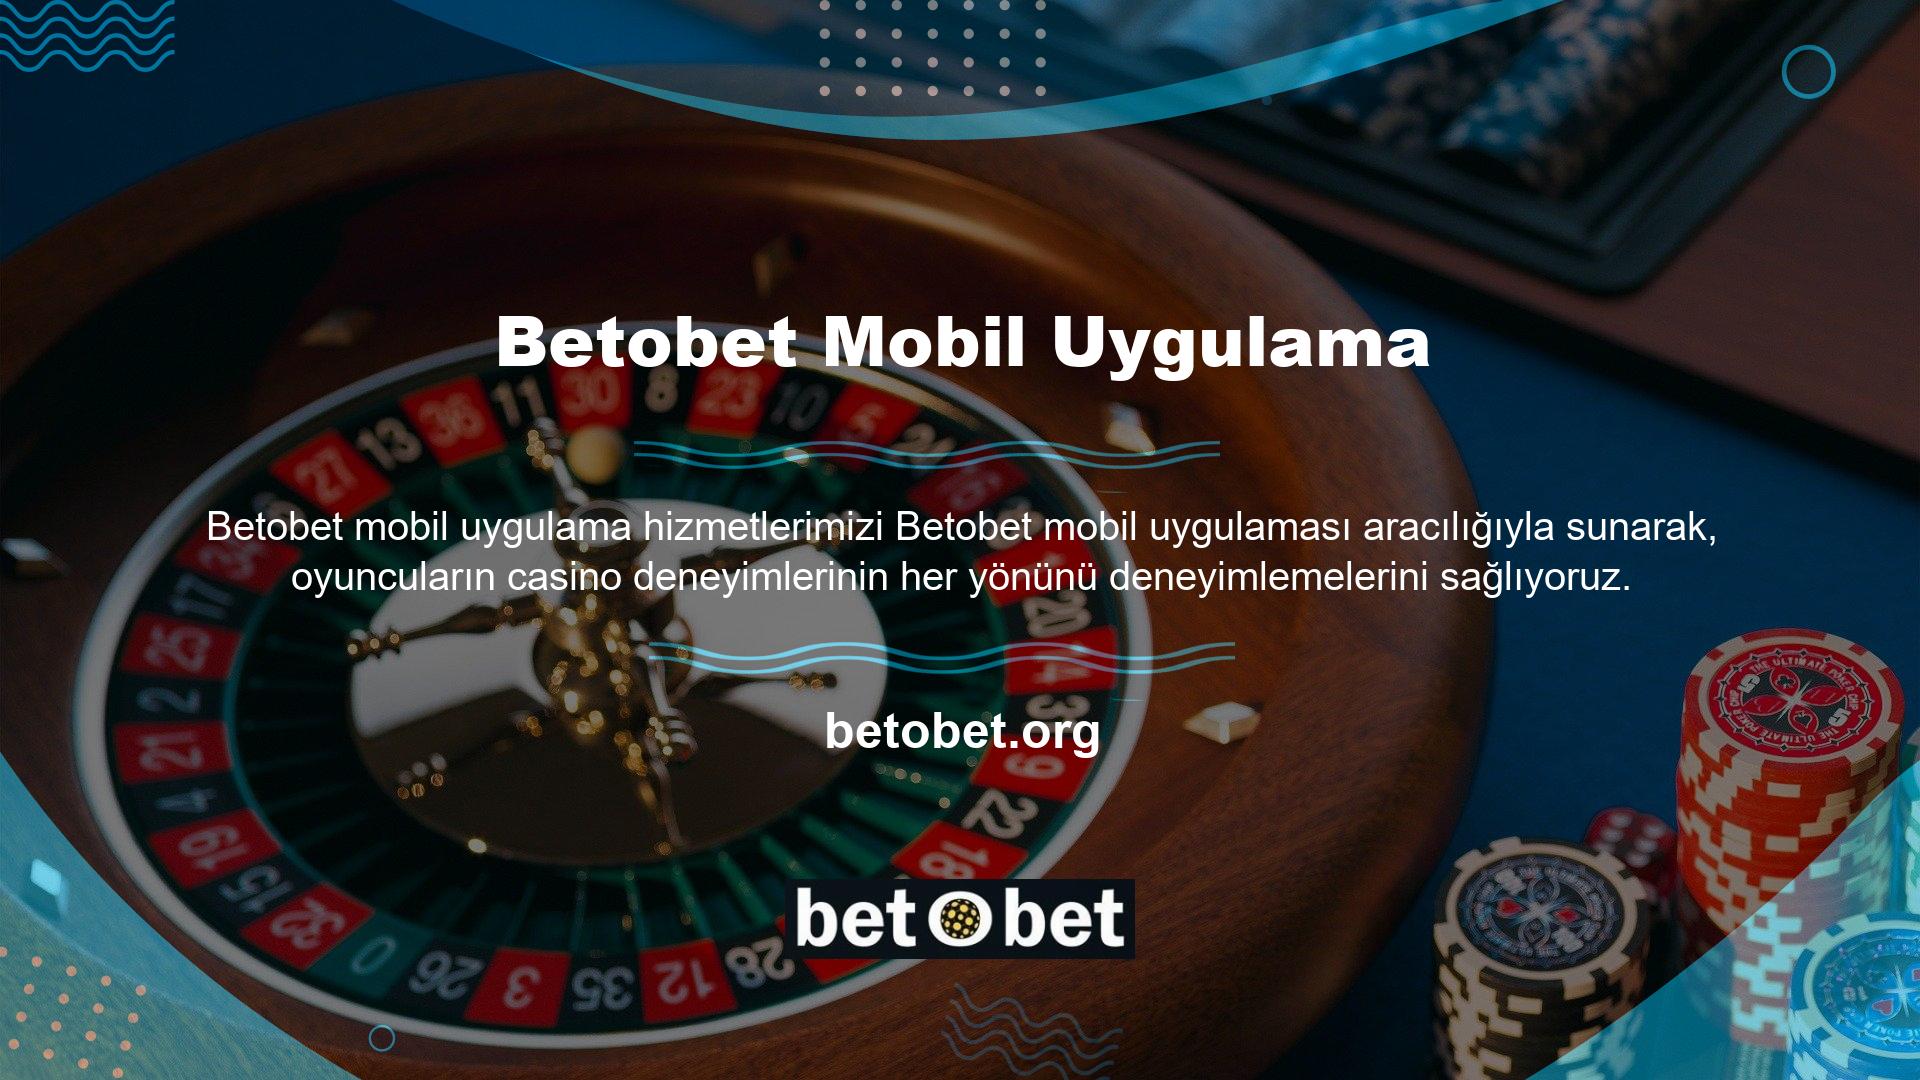 Harika bir casino deneyimi ve kaliteli oyunlar sunan Betobet, uzun yıllardır Türkiye'de faaliyet gösteren en güçlü şirketlerden biri olmuştur